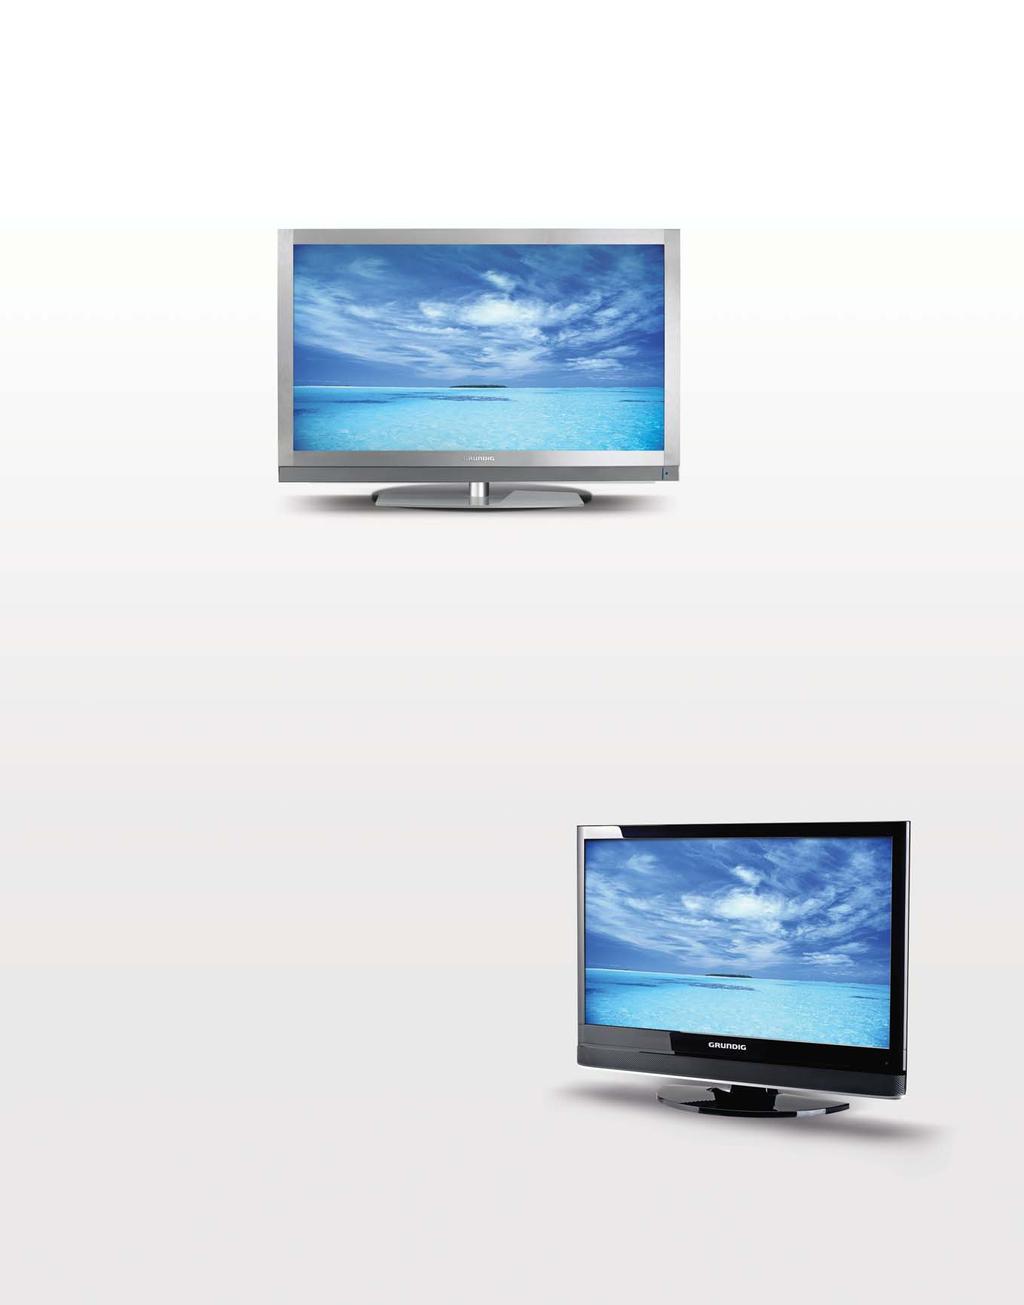 Kurumsal Sorumluluk 2010 32 40 46 55 LCD TV Alüminyum tasar m, cam ayakla tamamlanan estetik, %40 daha az enerji tüketimi Kurflunsuz ve c vas z malzeme kullan m yla çevreye daha duyarl üretim